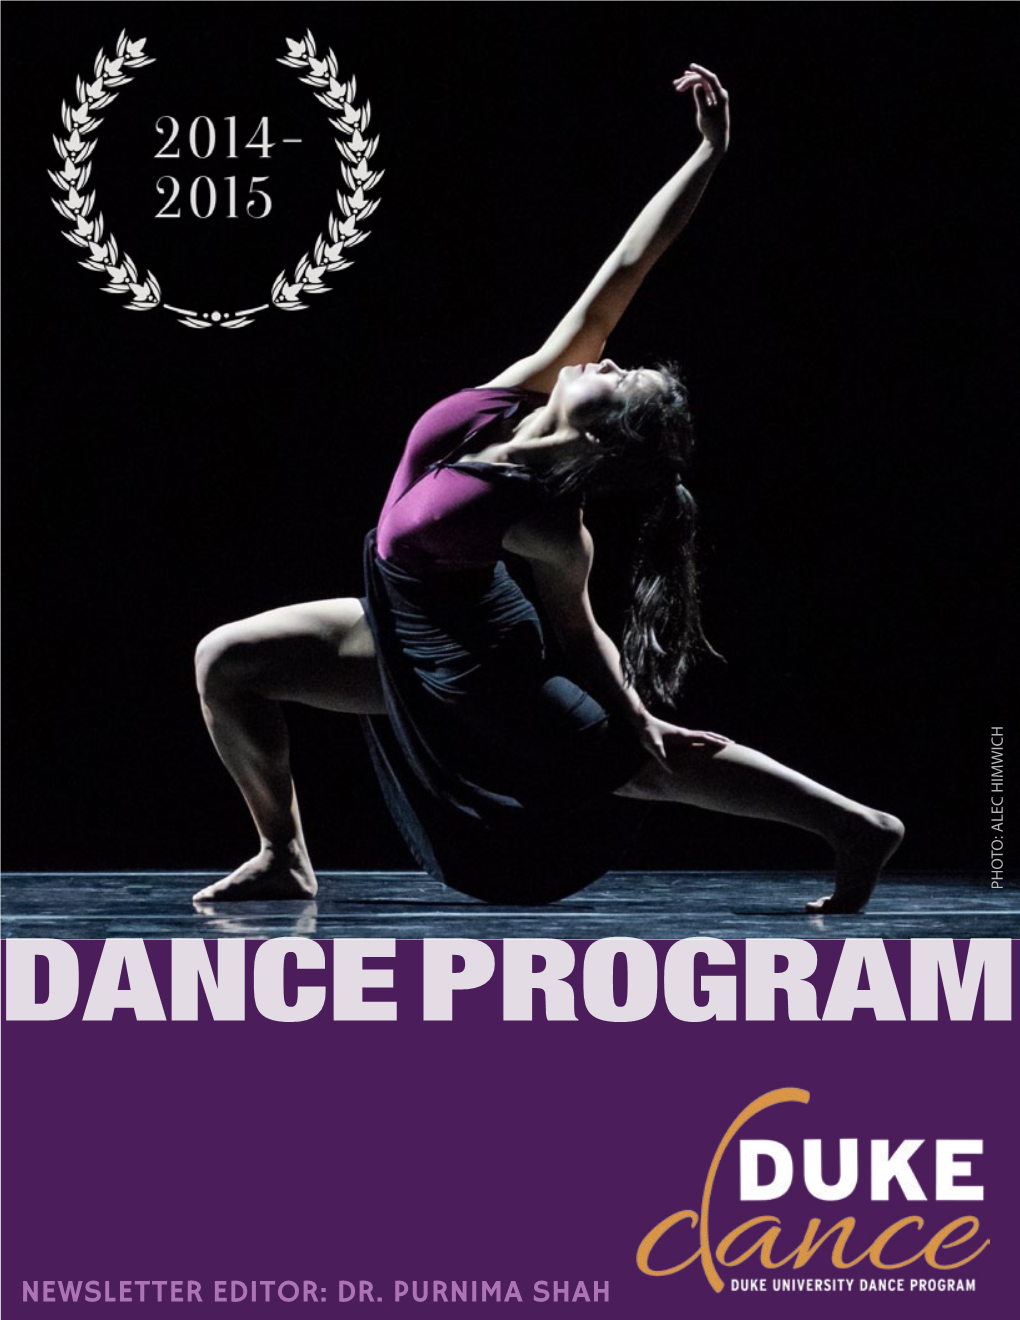 Editor's Report on the Duke University Dance Program